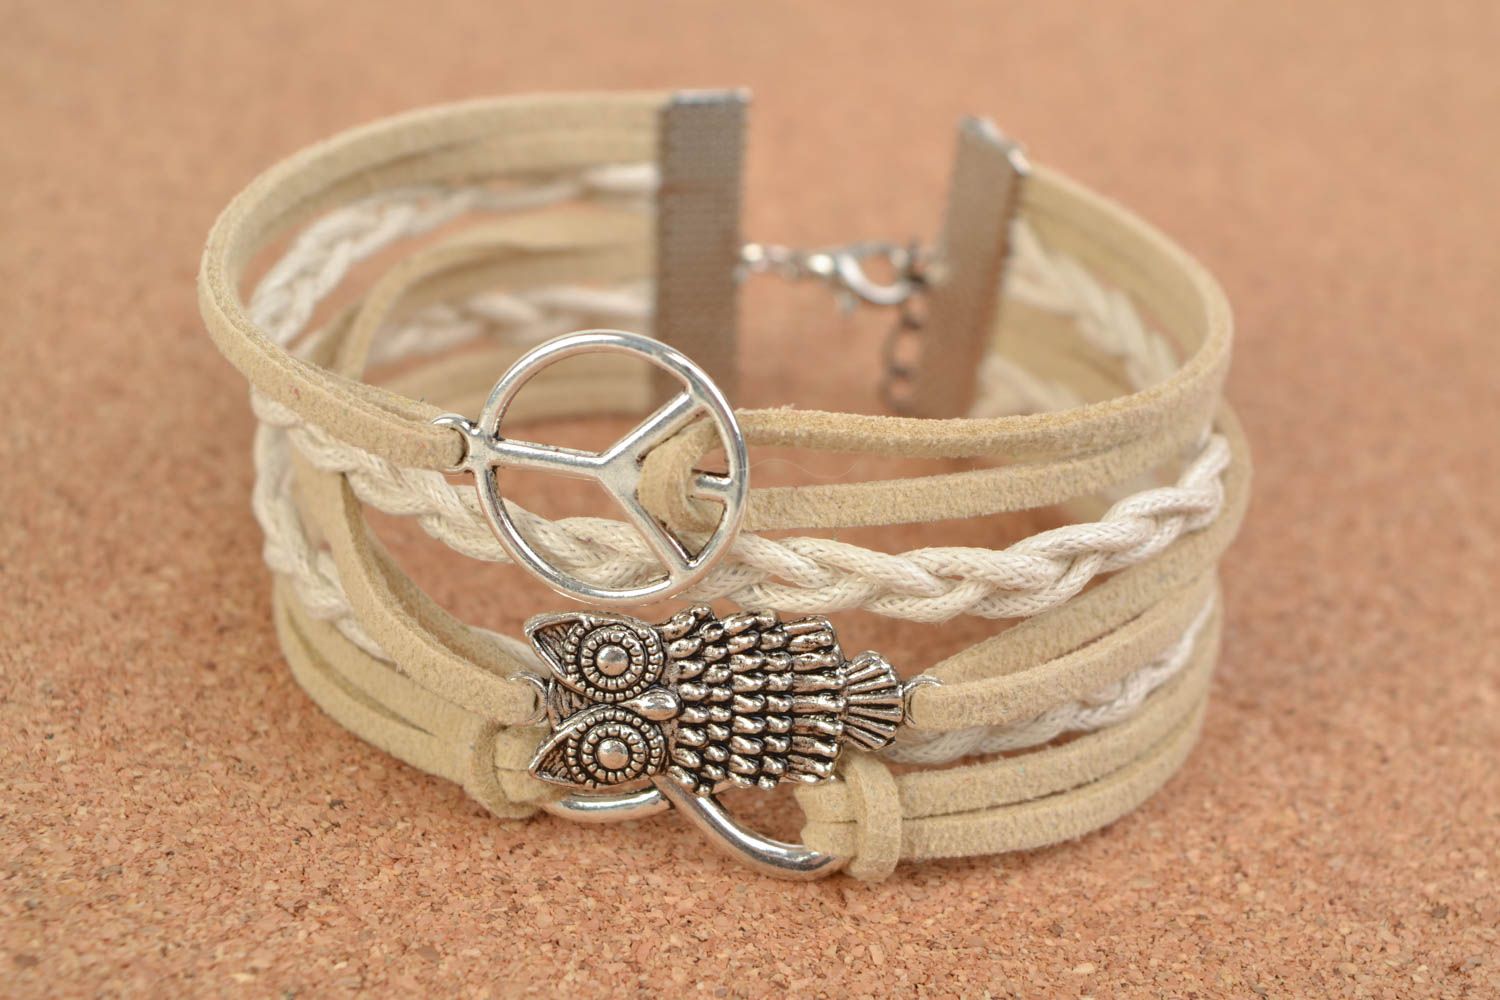 Handmade designer bracelet unusual bracelet with charms stylish female accessory photo 1